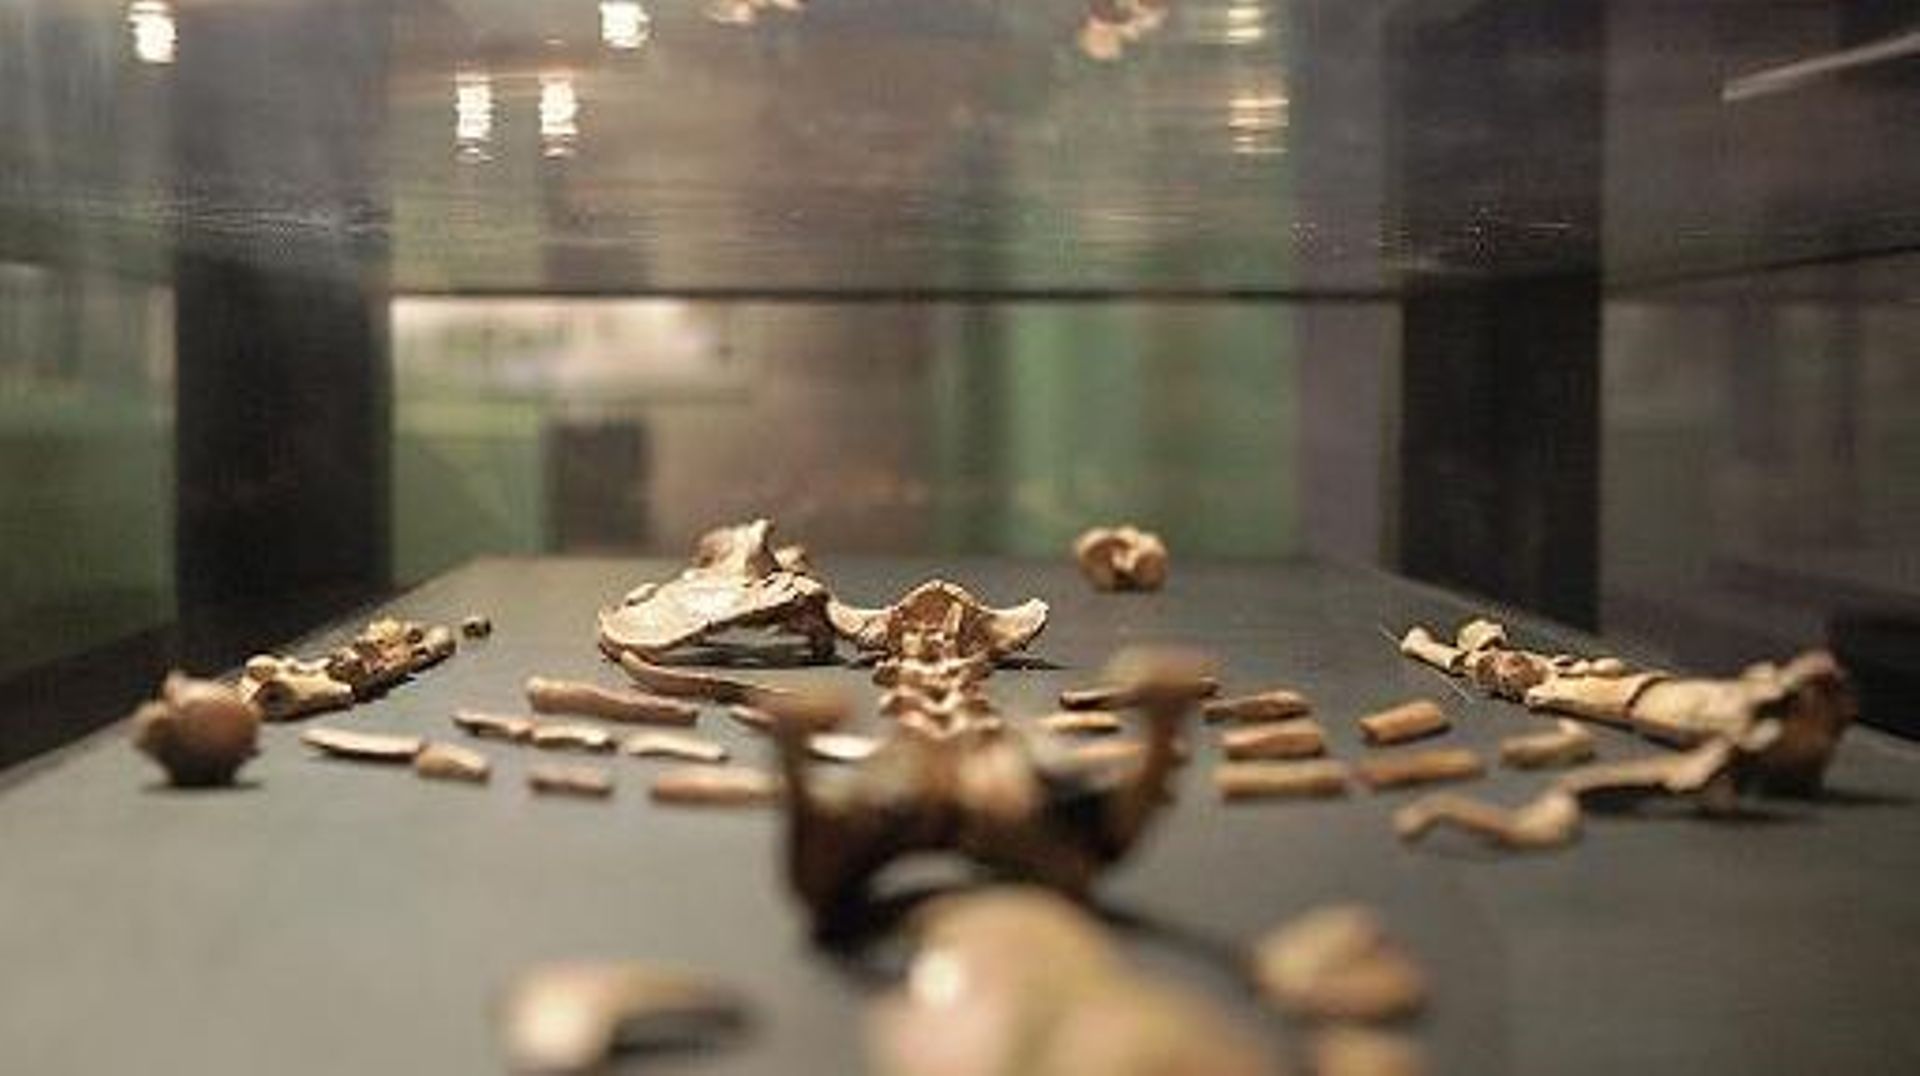 Reproduction du squelette de Lucy au musée national d'Ethiopie, à Addis-Abeba, le 3 décembre 2014 